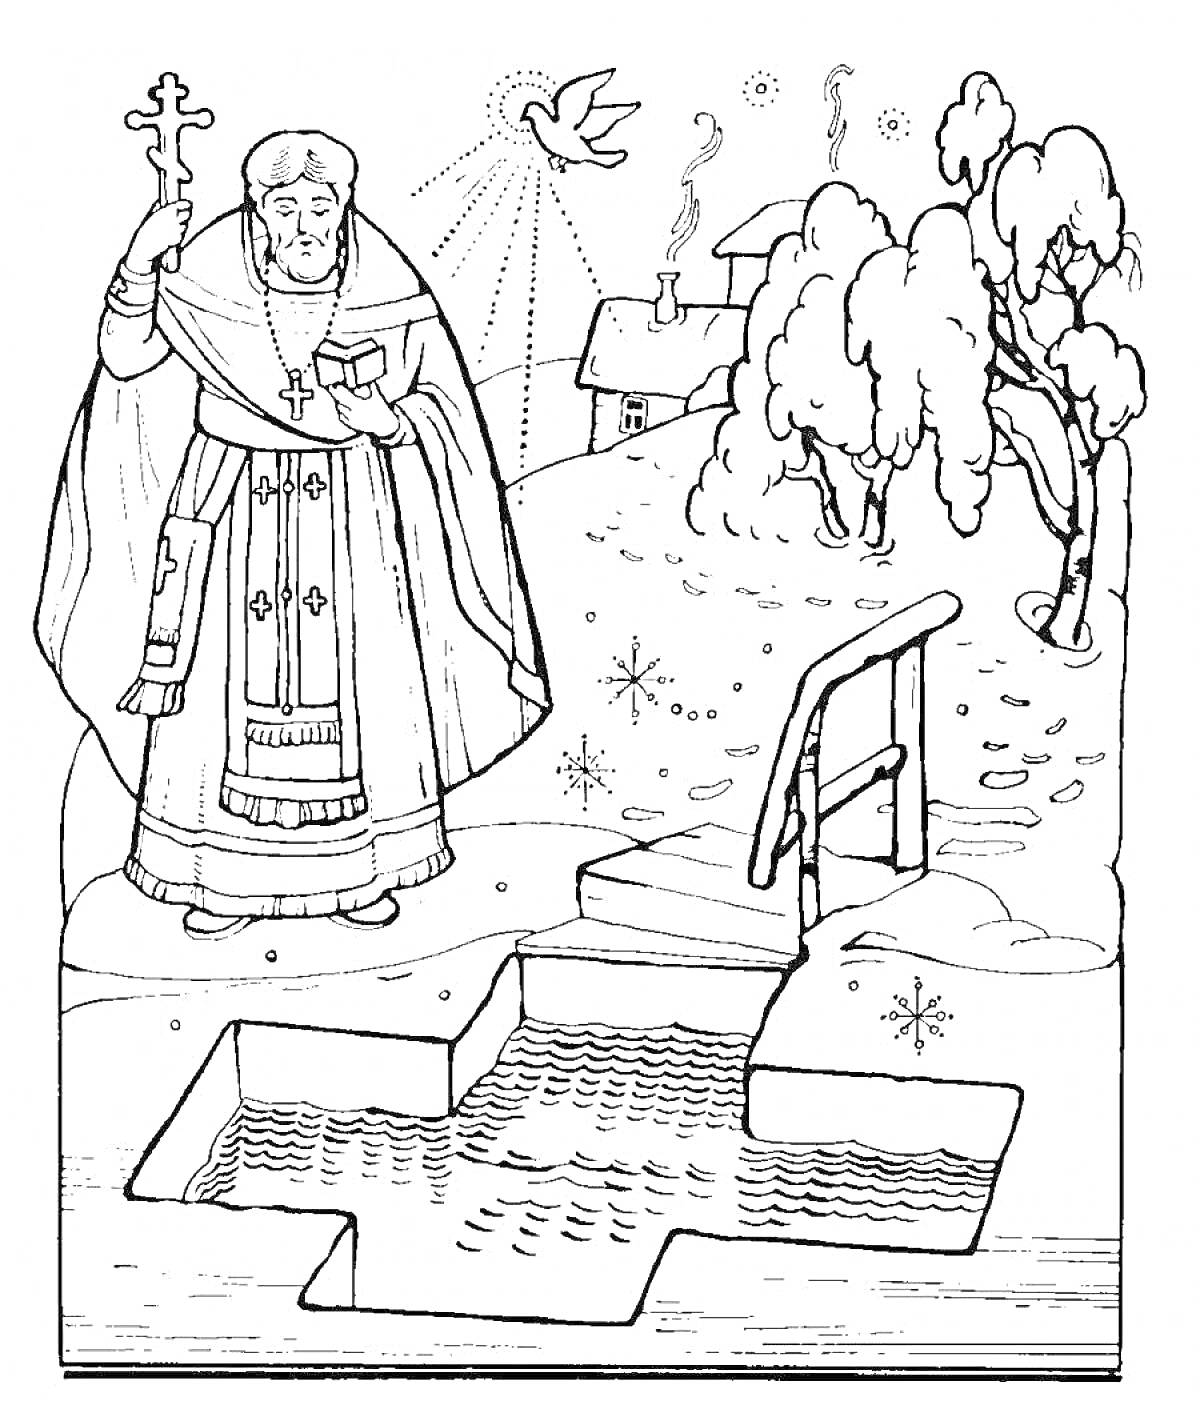 Раскраска Священник с крестом, голубь, звезды, прорубь в форме креста, лестница, зима, деревья в снегу, деревенский дом с трубами